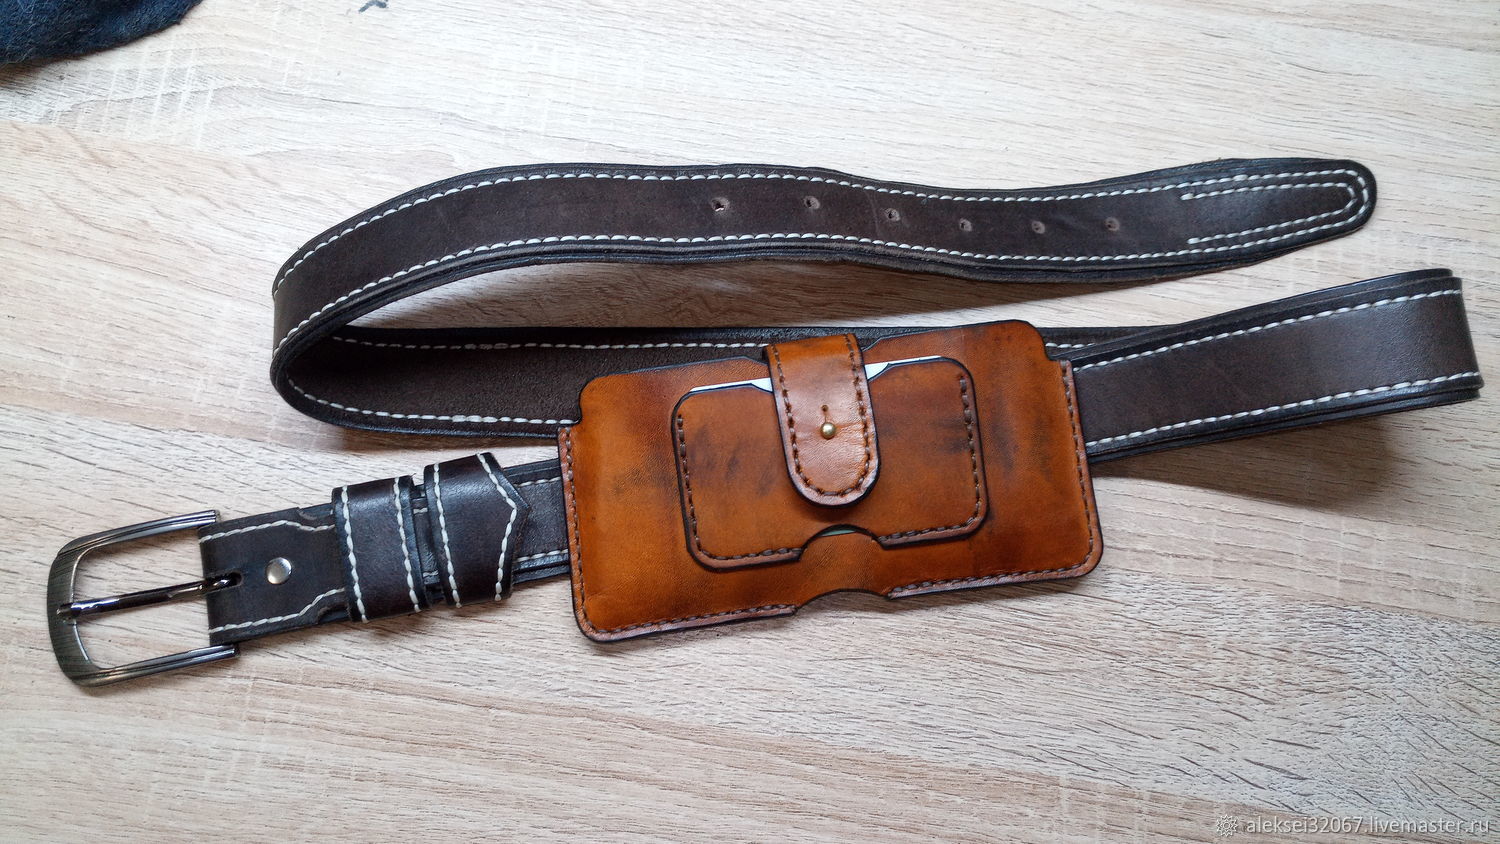 Leather belt holster, Case, Smolensk,  Фото №1